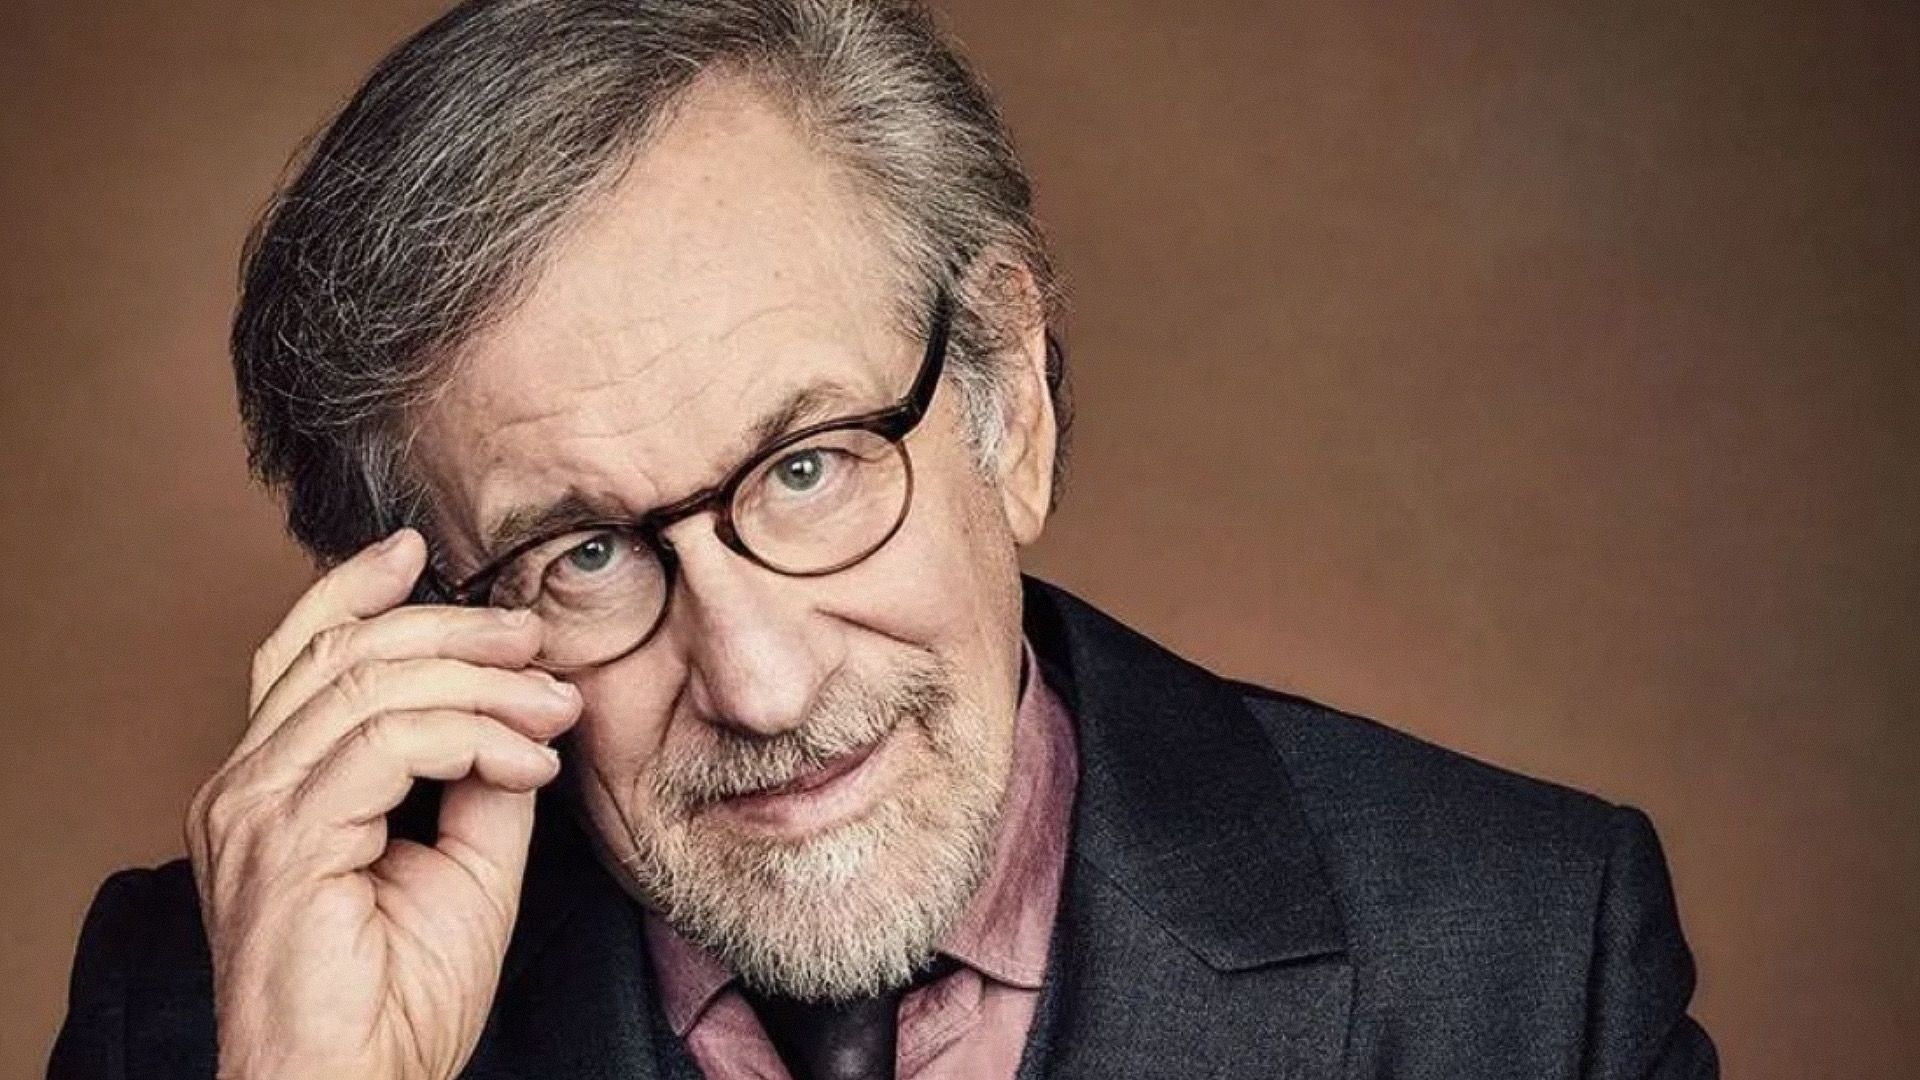 A still of Steven Spielberg (Image via Instagram/stevenspielbergfans)